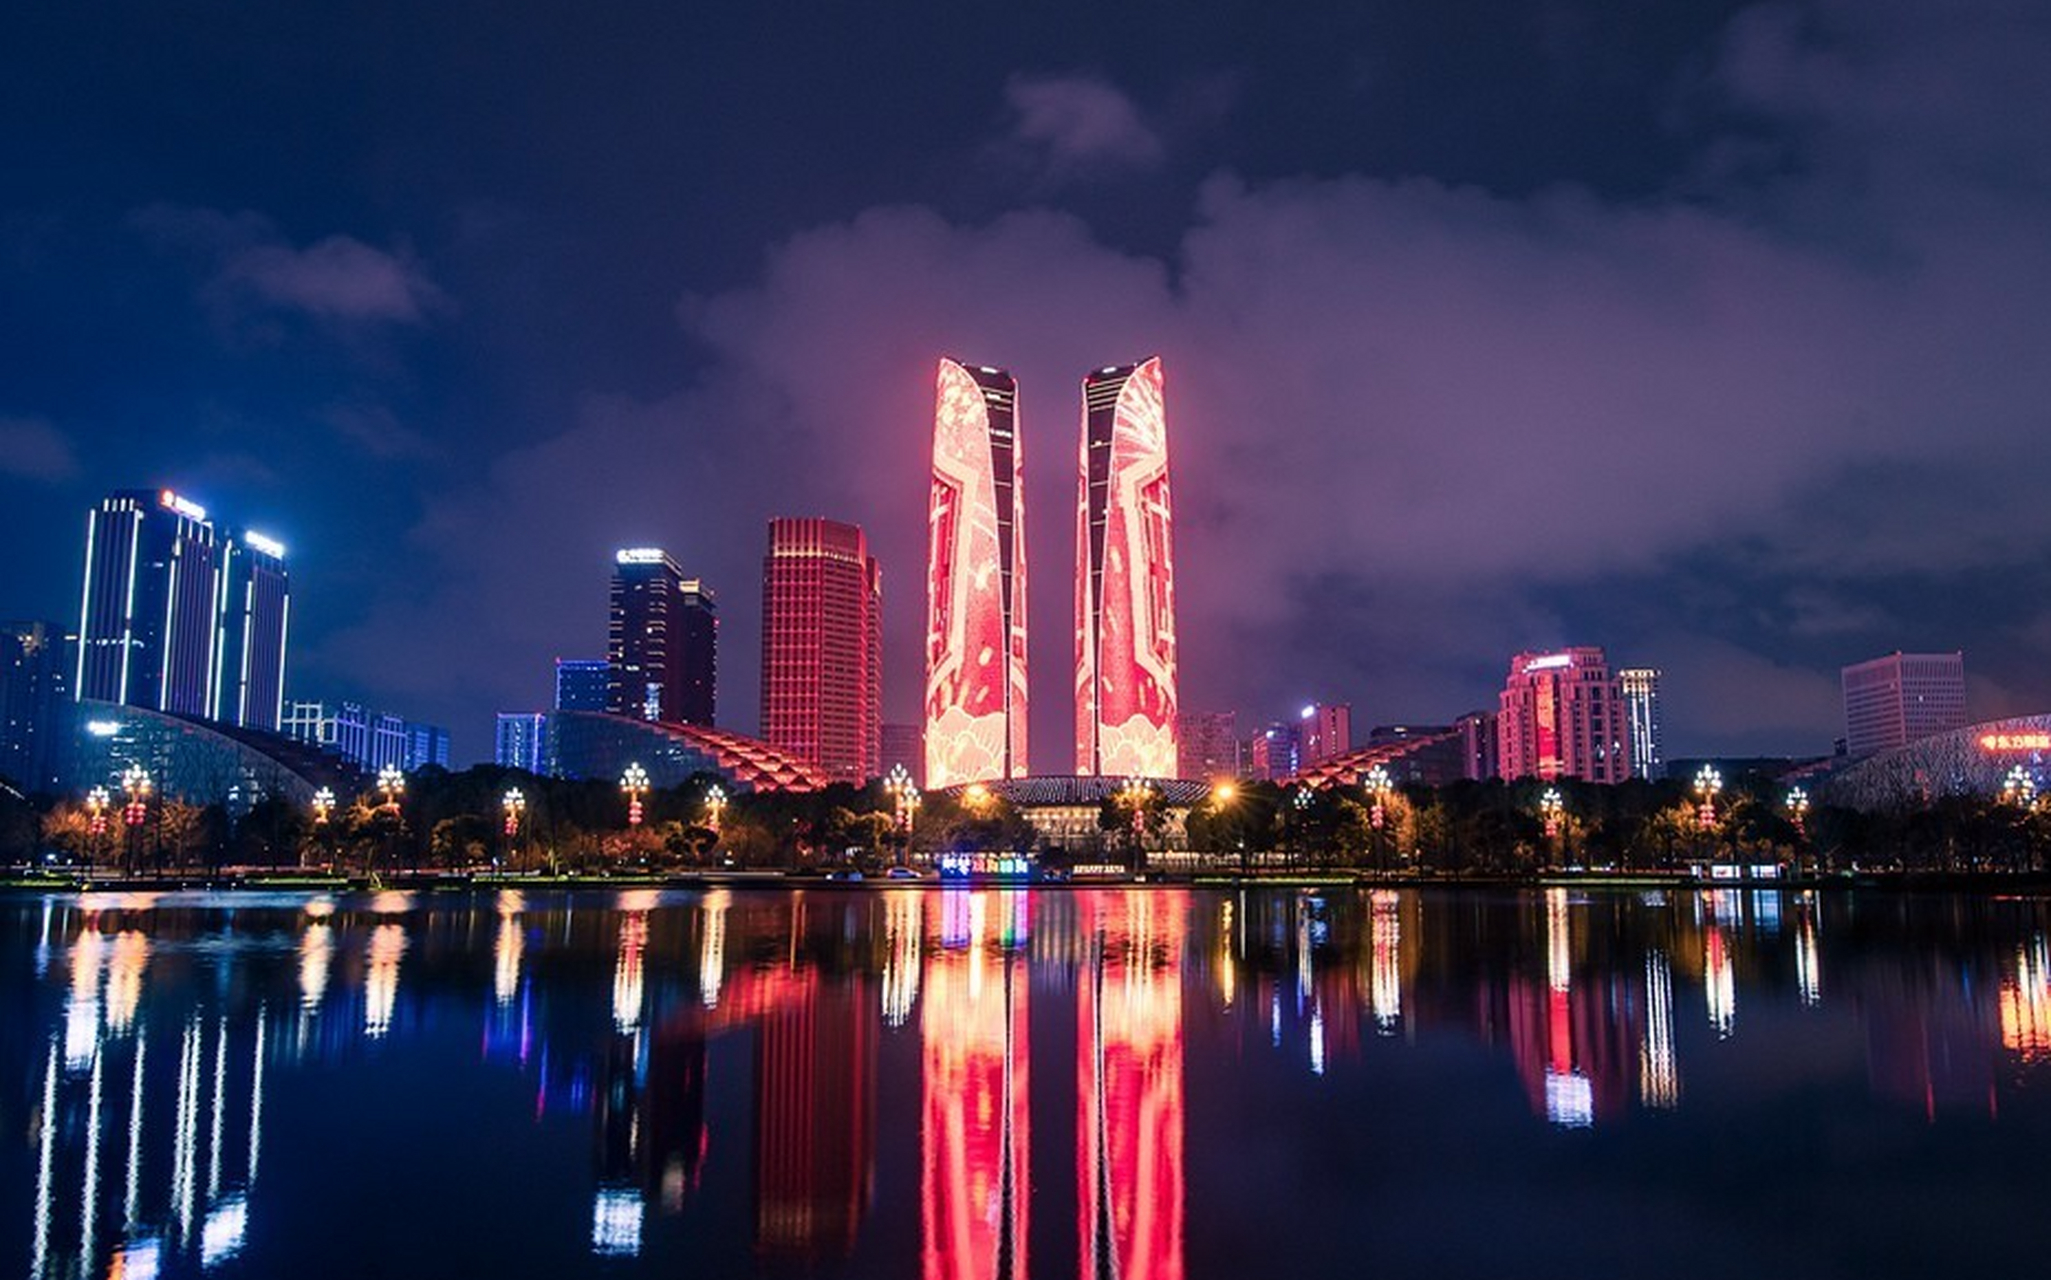 成都双子塔灯光秀作为城市地标广告媒介,拥有壮观的led大屏和巨大人